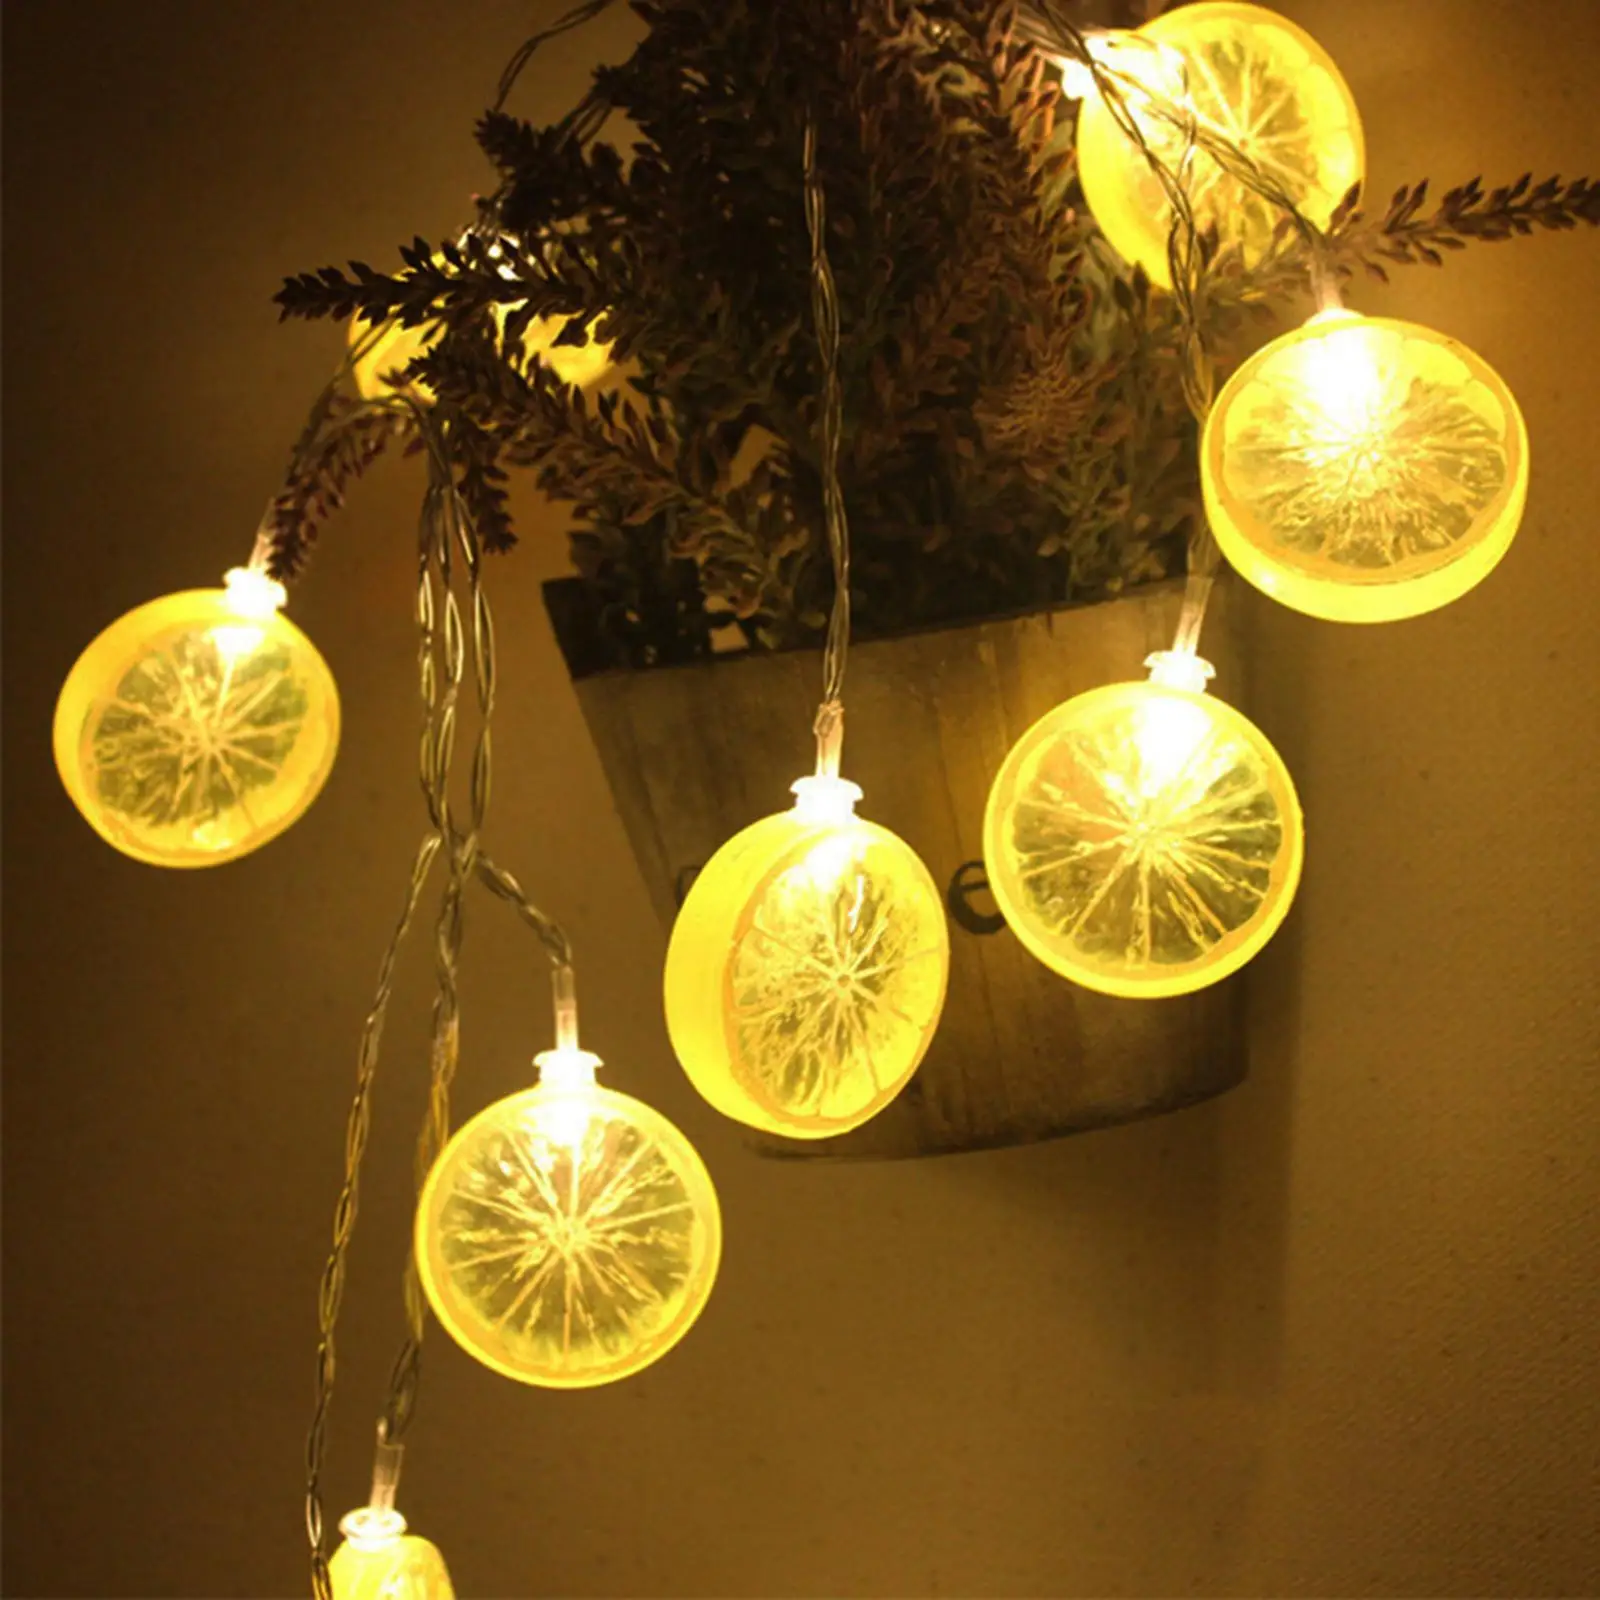 LED Lemon String Lights USB 40 LEDs Home Decor Garland Festival Decoration